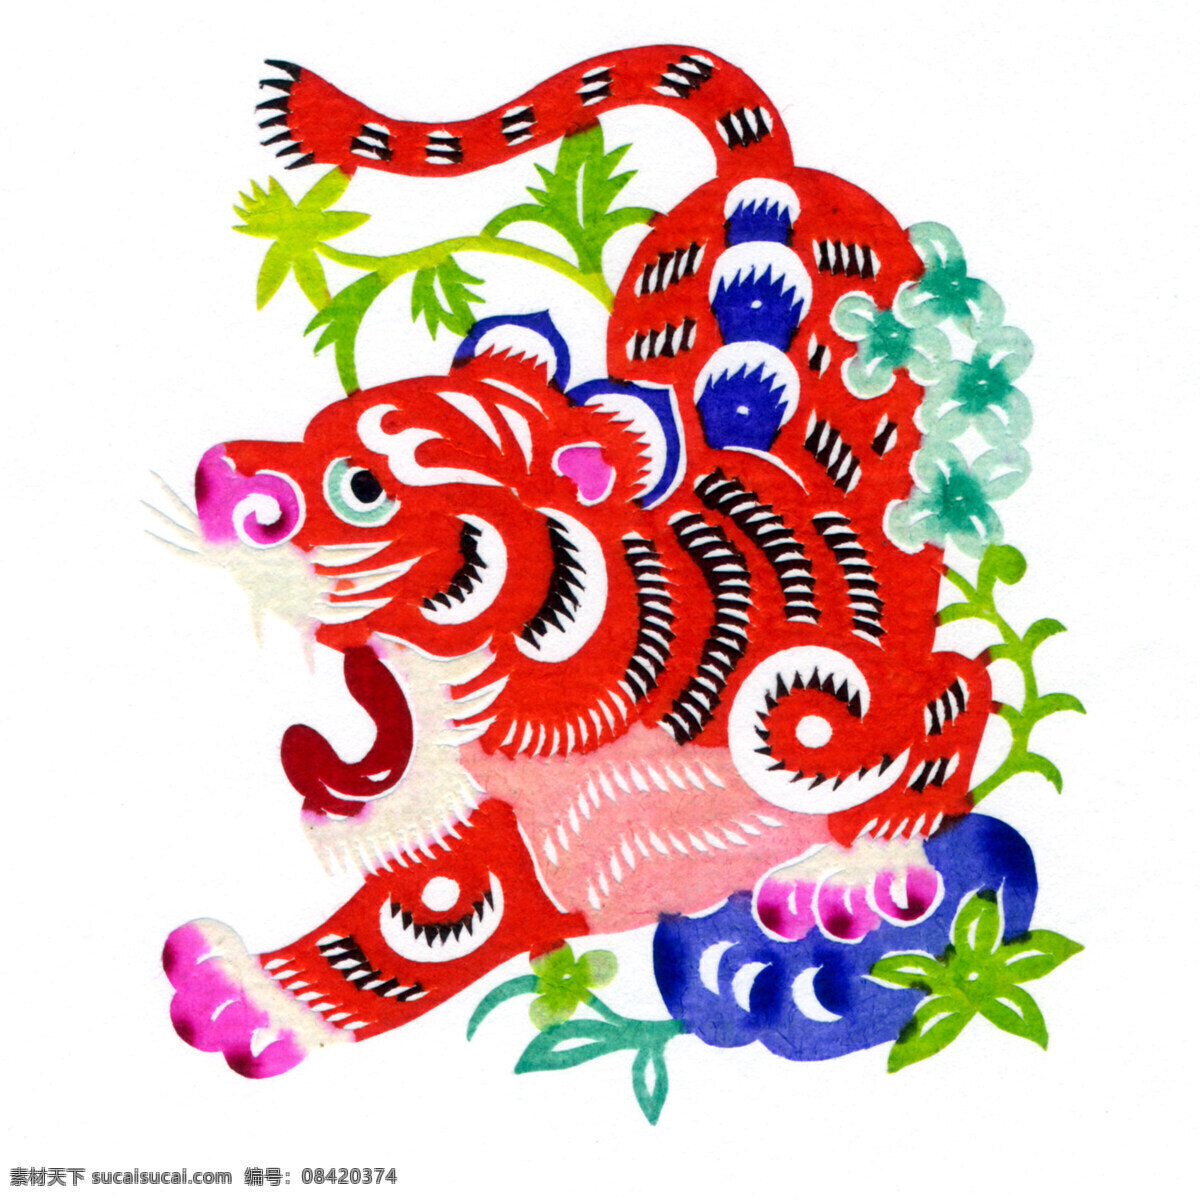 彩色 传统文化 虎年 老虎 年画 色彩 生肖 设计素材 模板下载 年画老虎 文化艺术